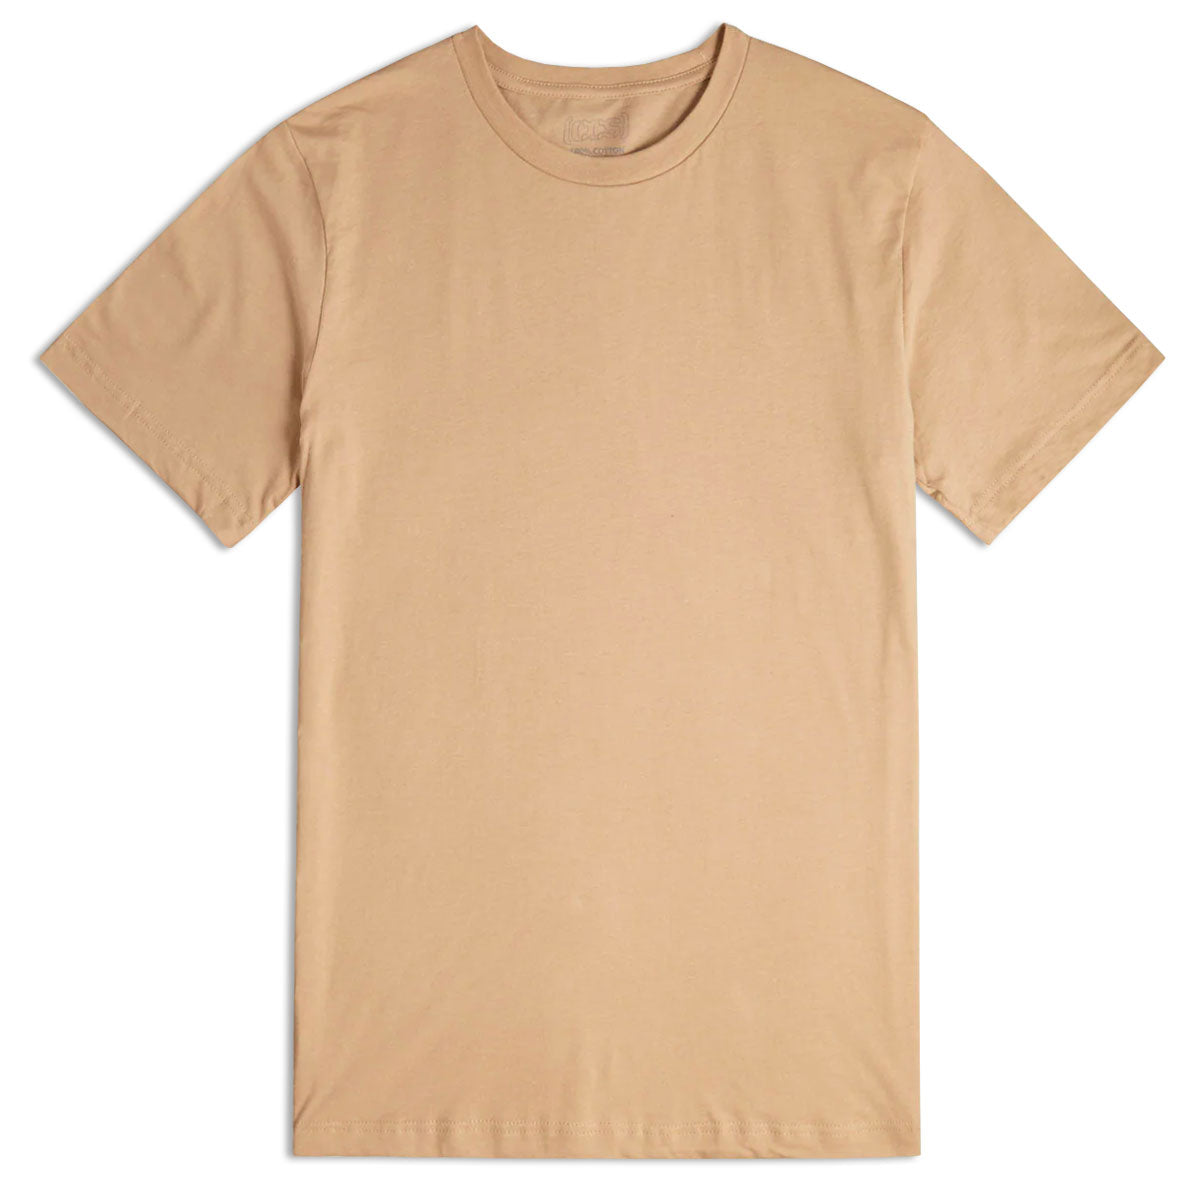 CCS Basis T-Shirt - Tan